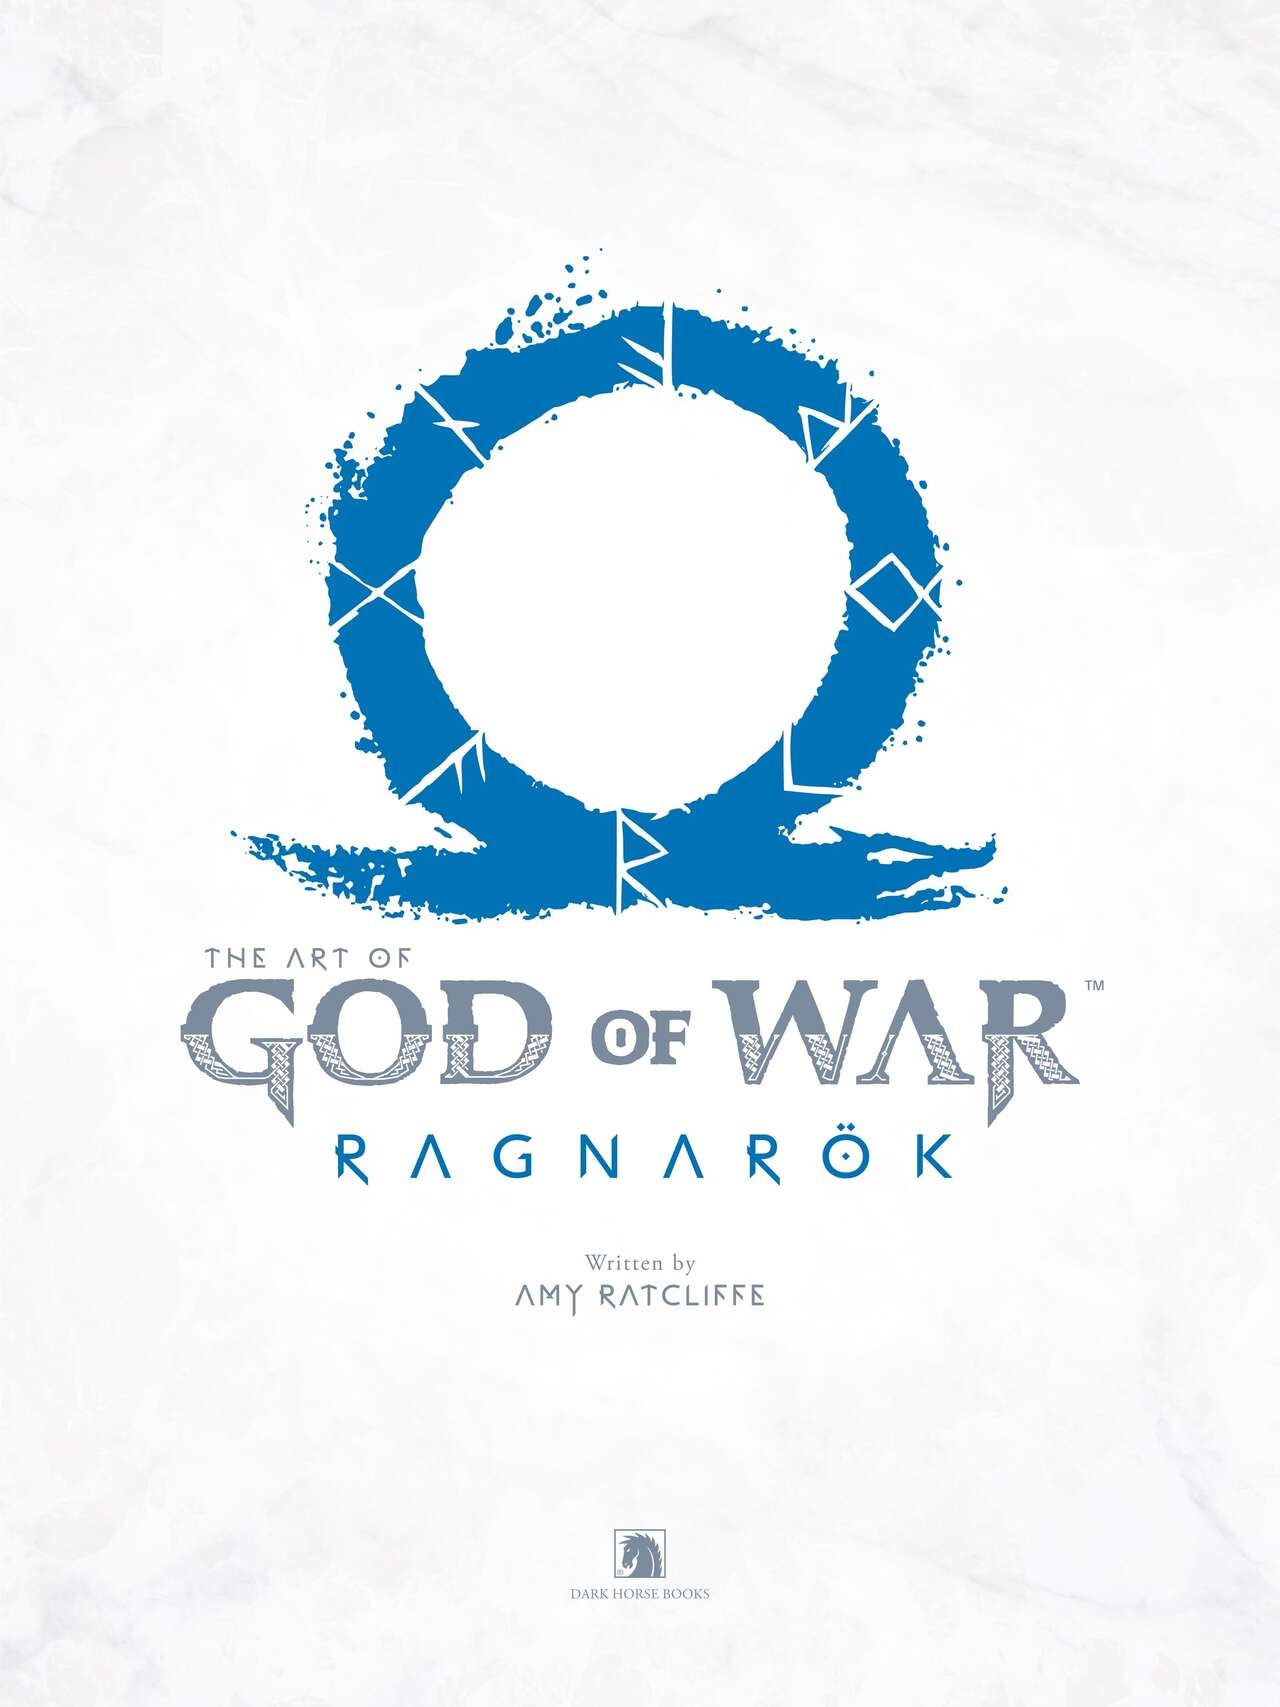 The Art of God of War Ragnarök 5